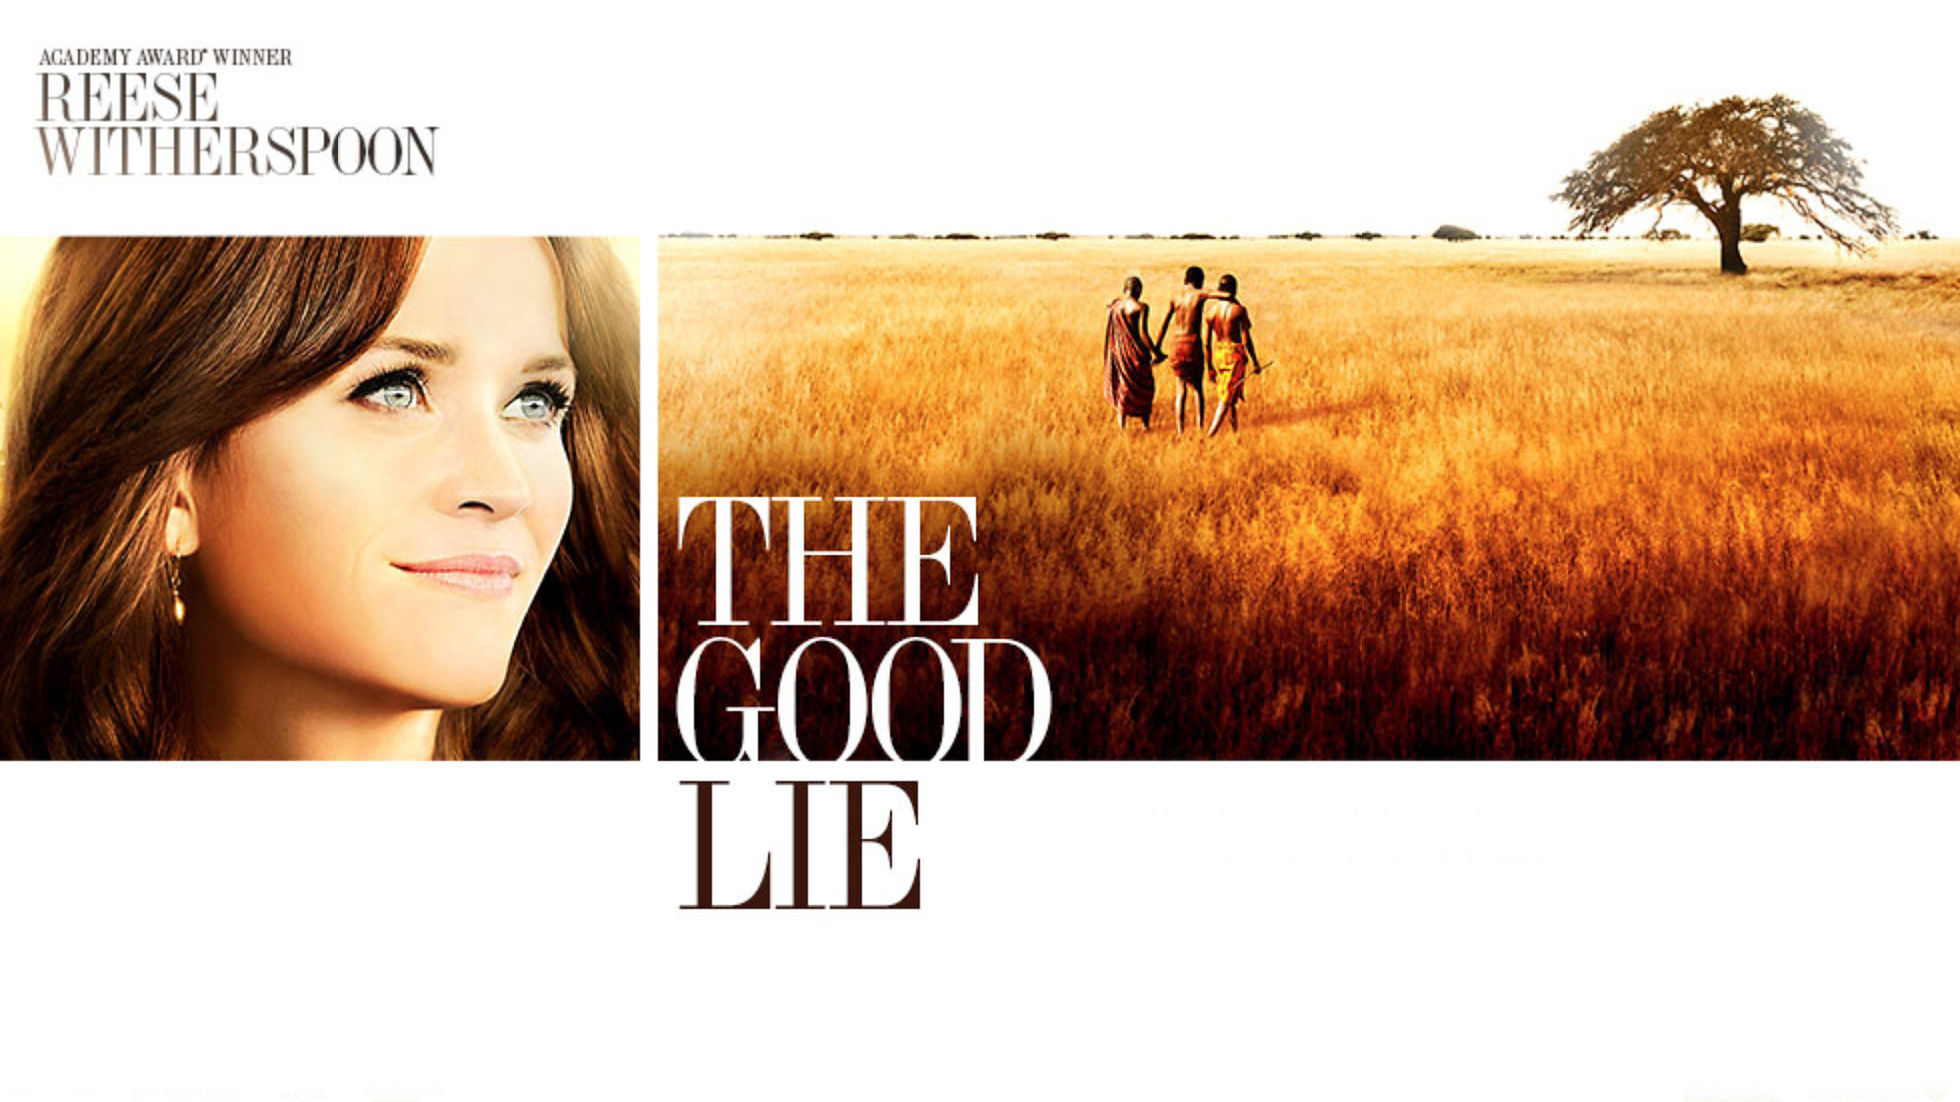 The Good Lie